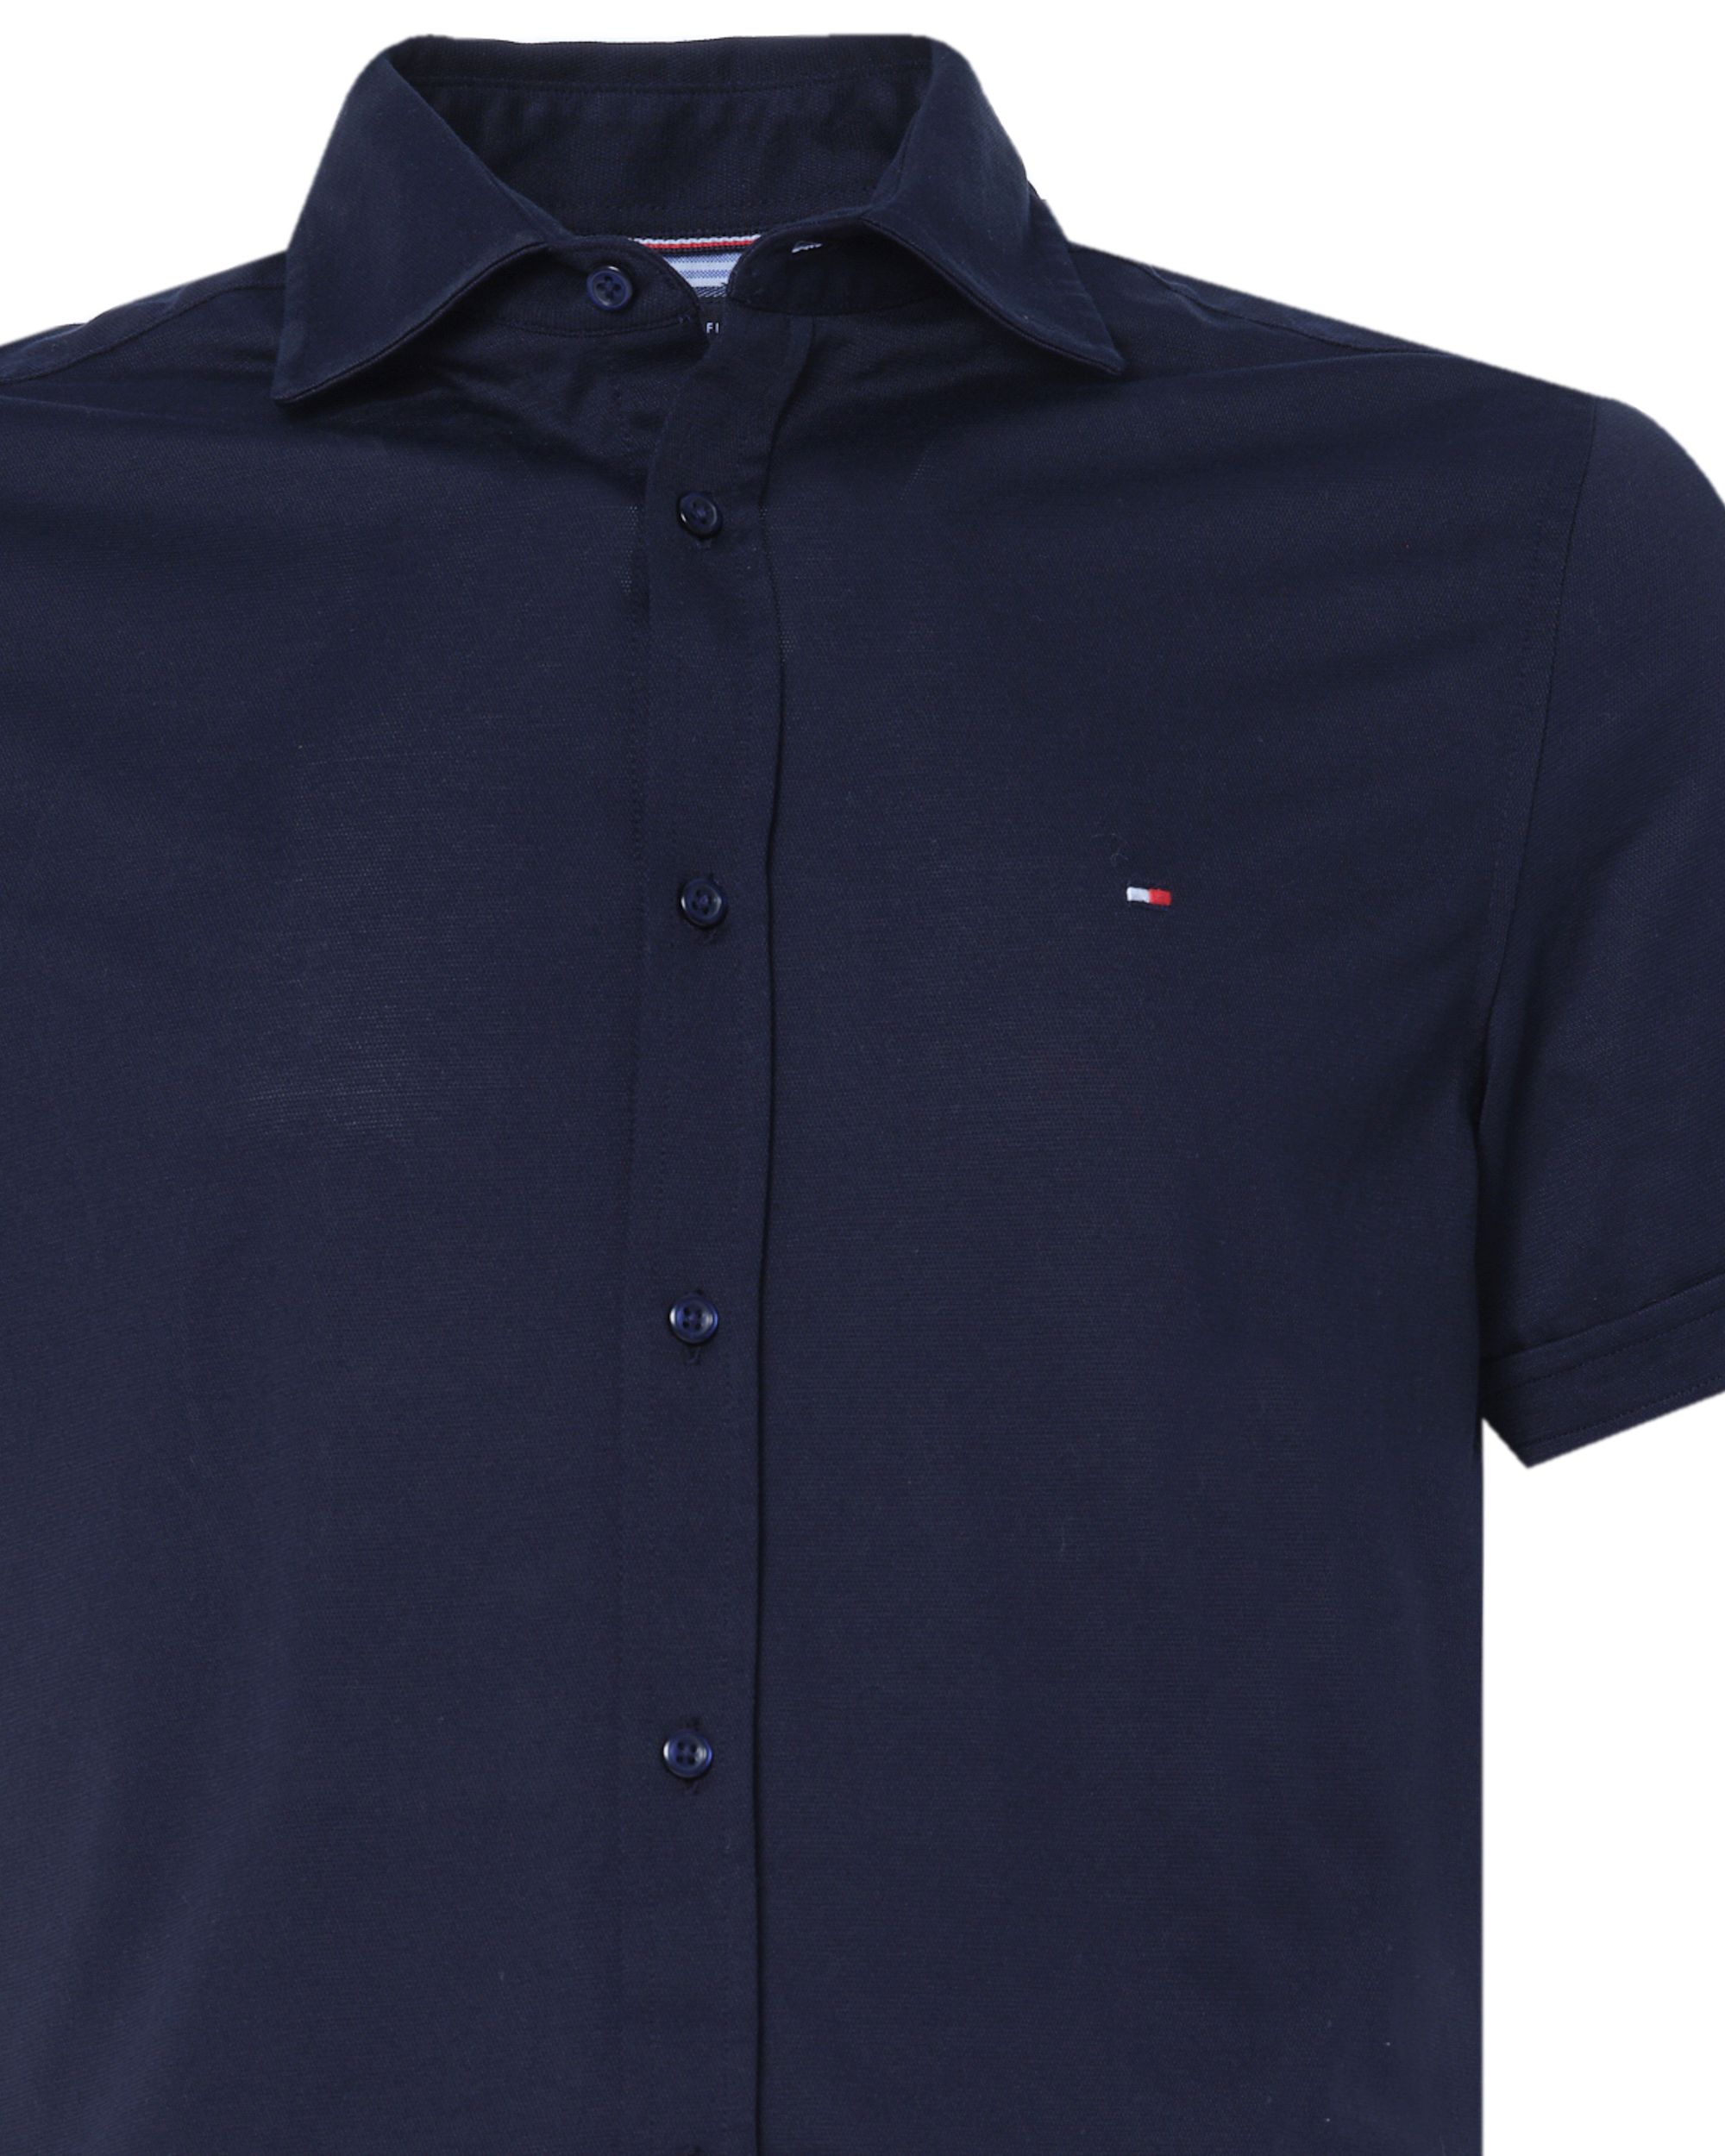 Tommy Hilfiger Menswear Casual Overhemd KM Donker blauw 075025-001-L